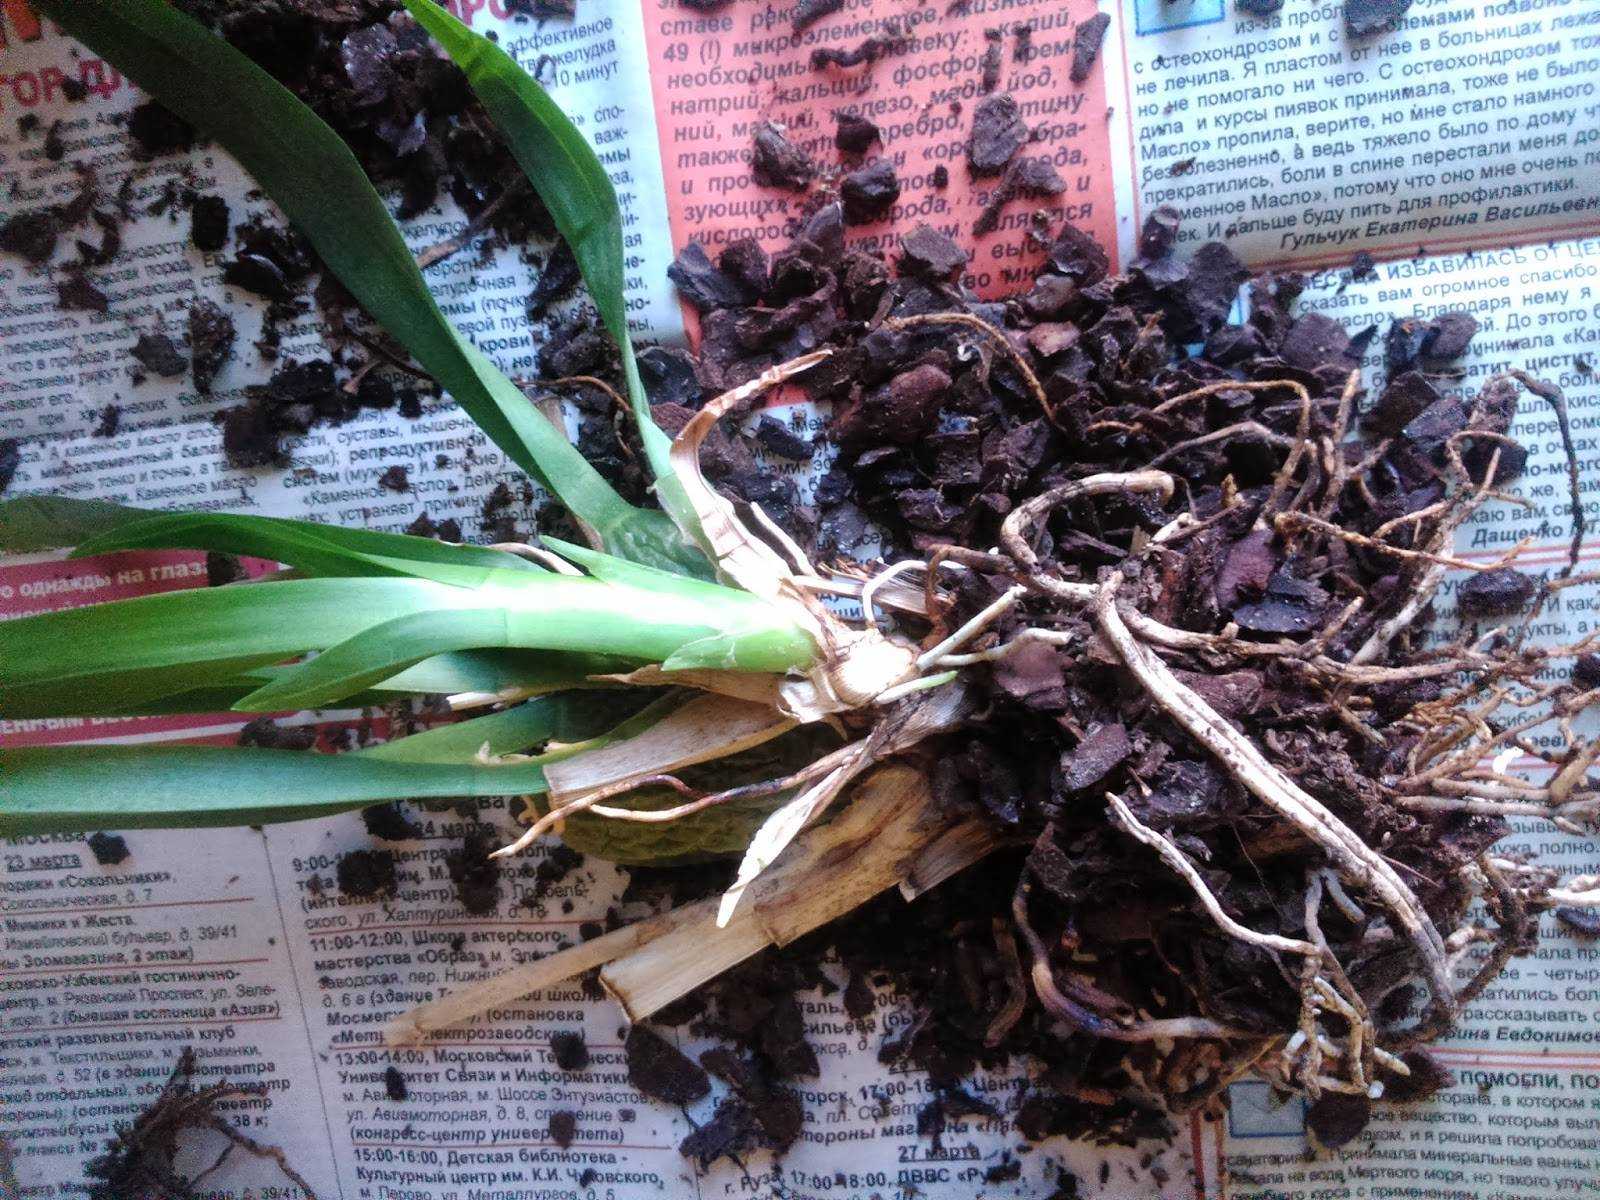 Орхидея камбрия (cambria): фото, описание вида и инструкция по уходу в домашних условиях, а также особенности покупки, посадки и размножения